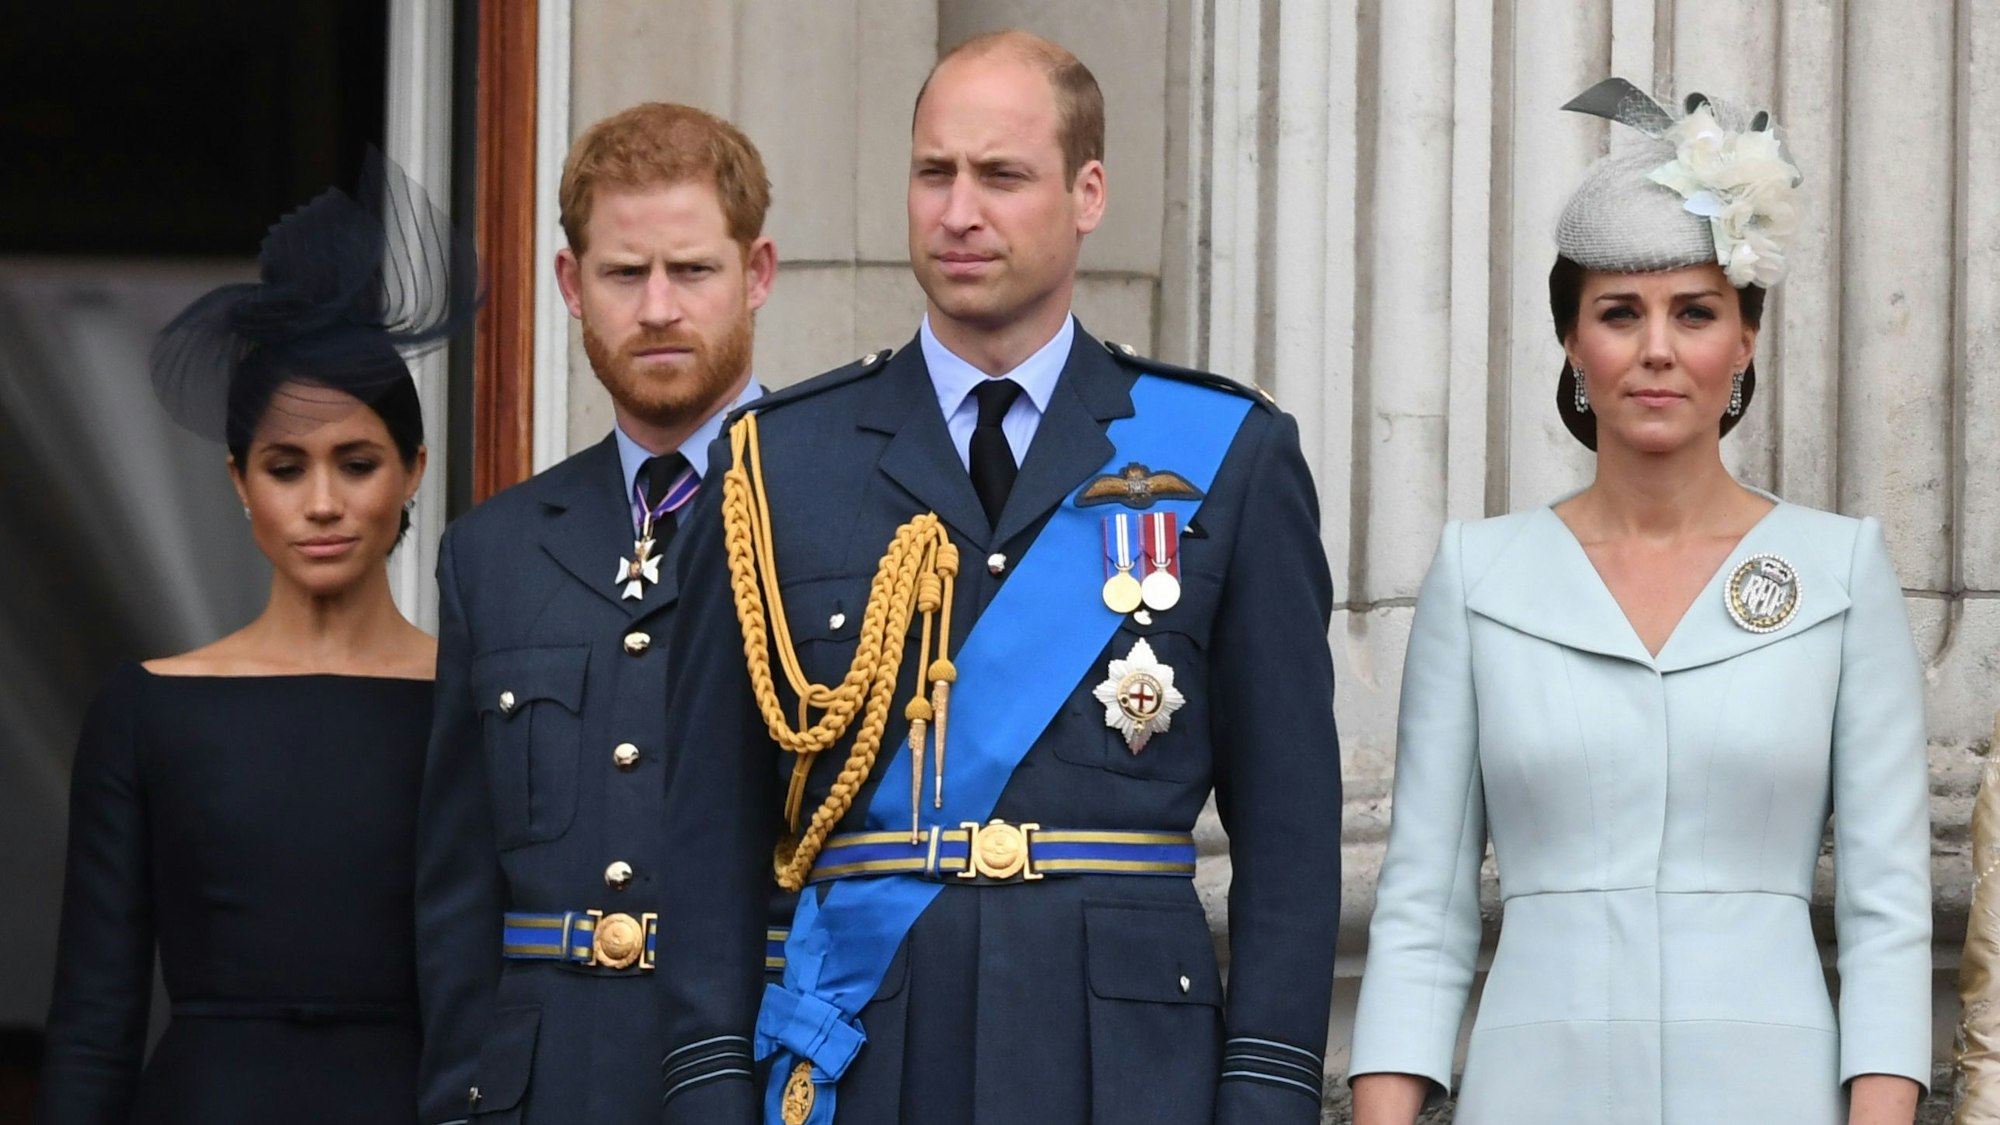 Herzogin Meghan (l-r), Prinz Harry, Prinz William und Herzogin Kate stehen auf dem Balkon des Buckingham-Palasts, um eine Luftparade zum 100. Jahrestag der britischen Luftwaffe, die Royal Air Force (RAF), zu beobachten.